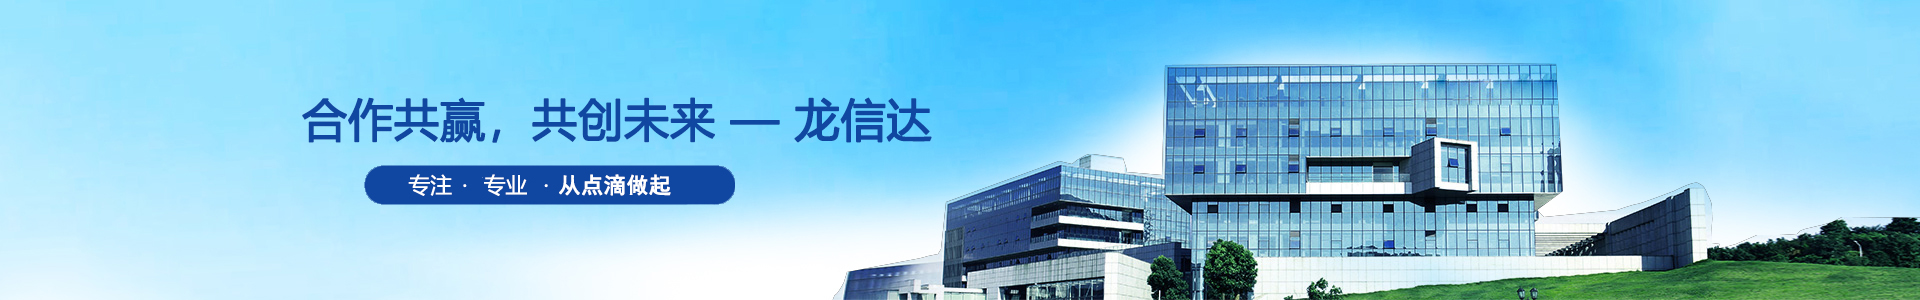 龙信达 | 光敏电阻、光敏传感�器、硅光电二极管-深圳市龙信达科技有限公司